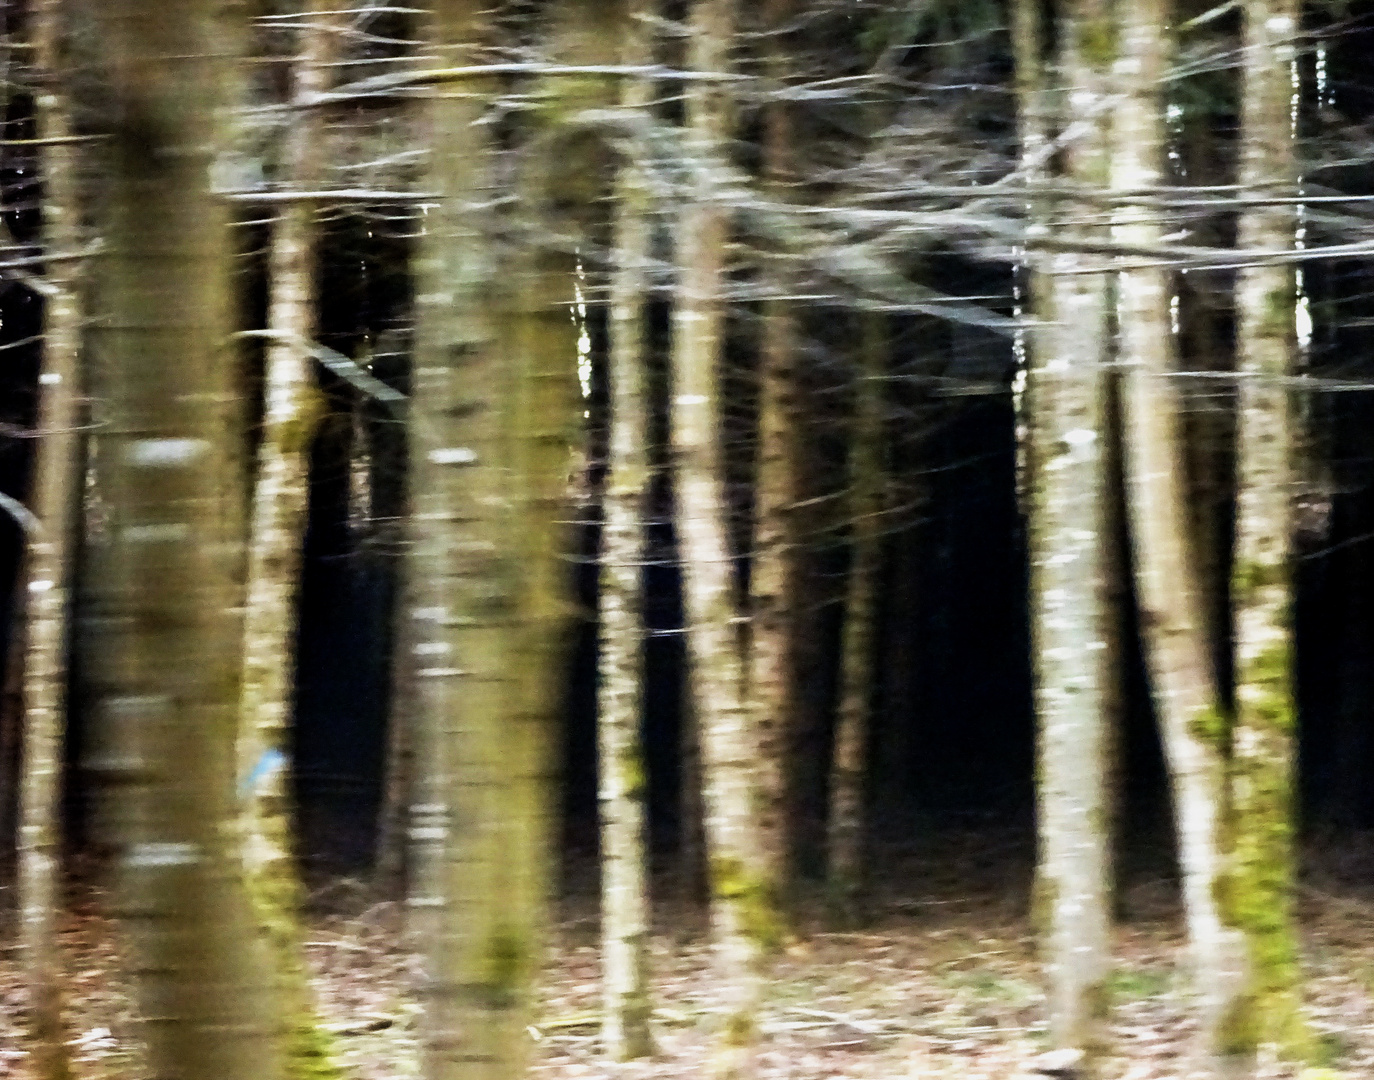 Geheimnisvoller Wald